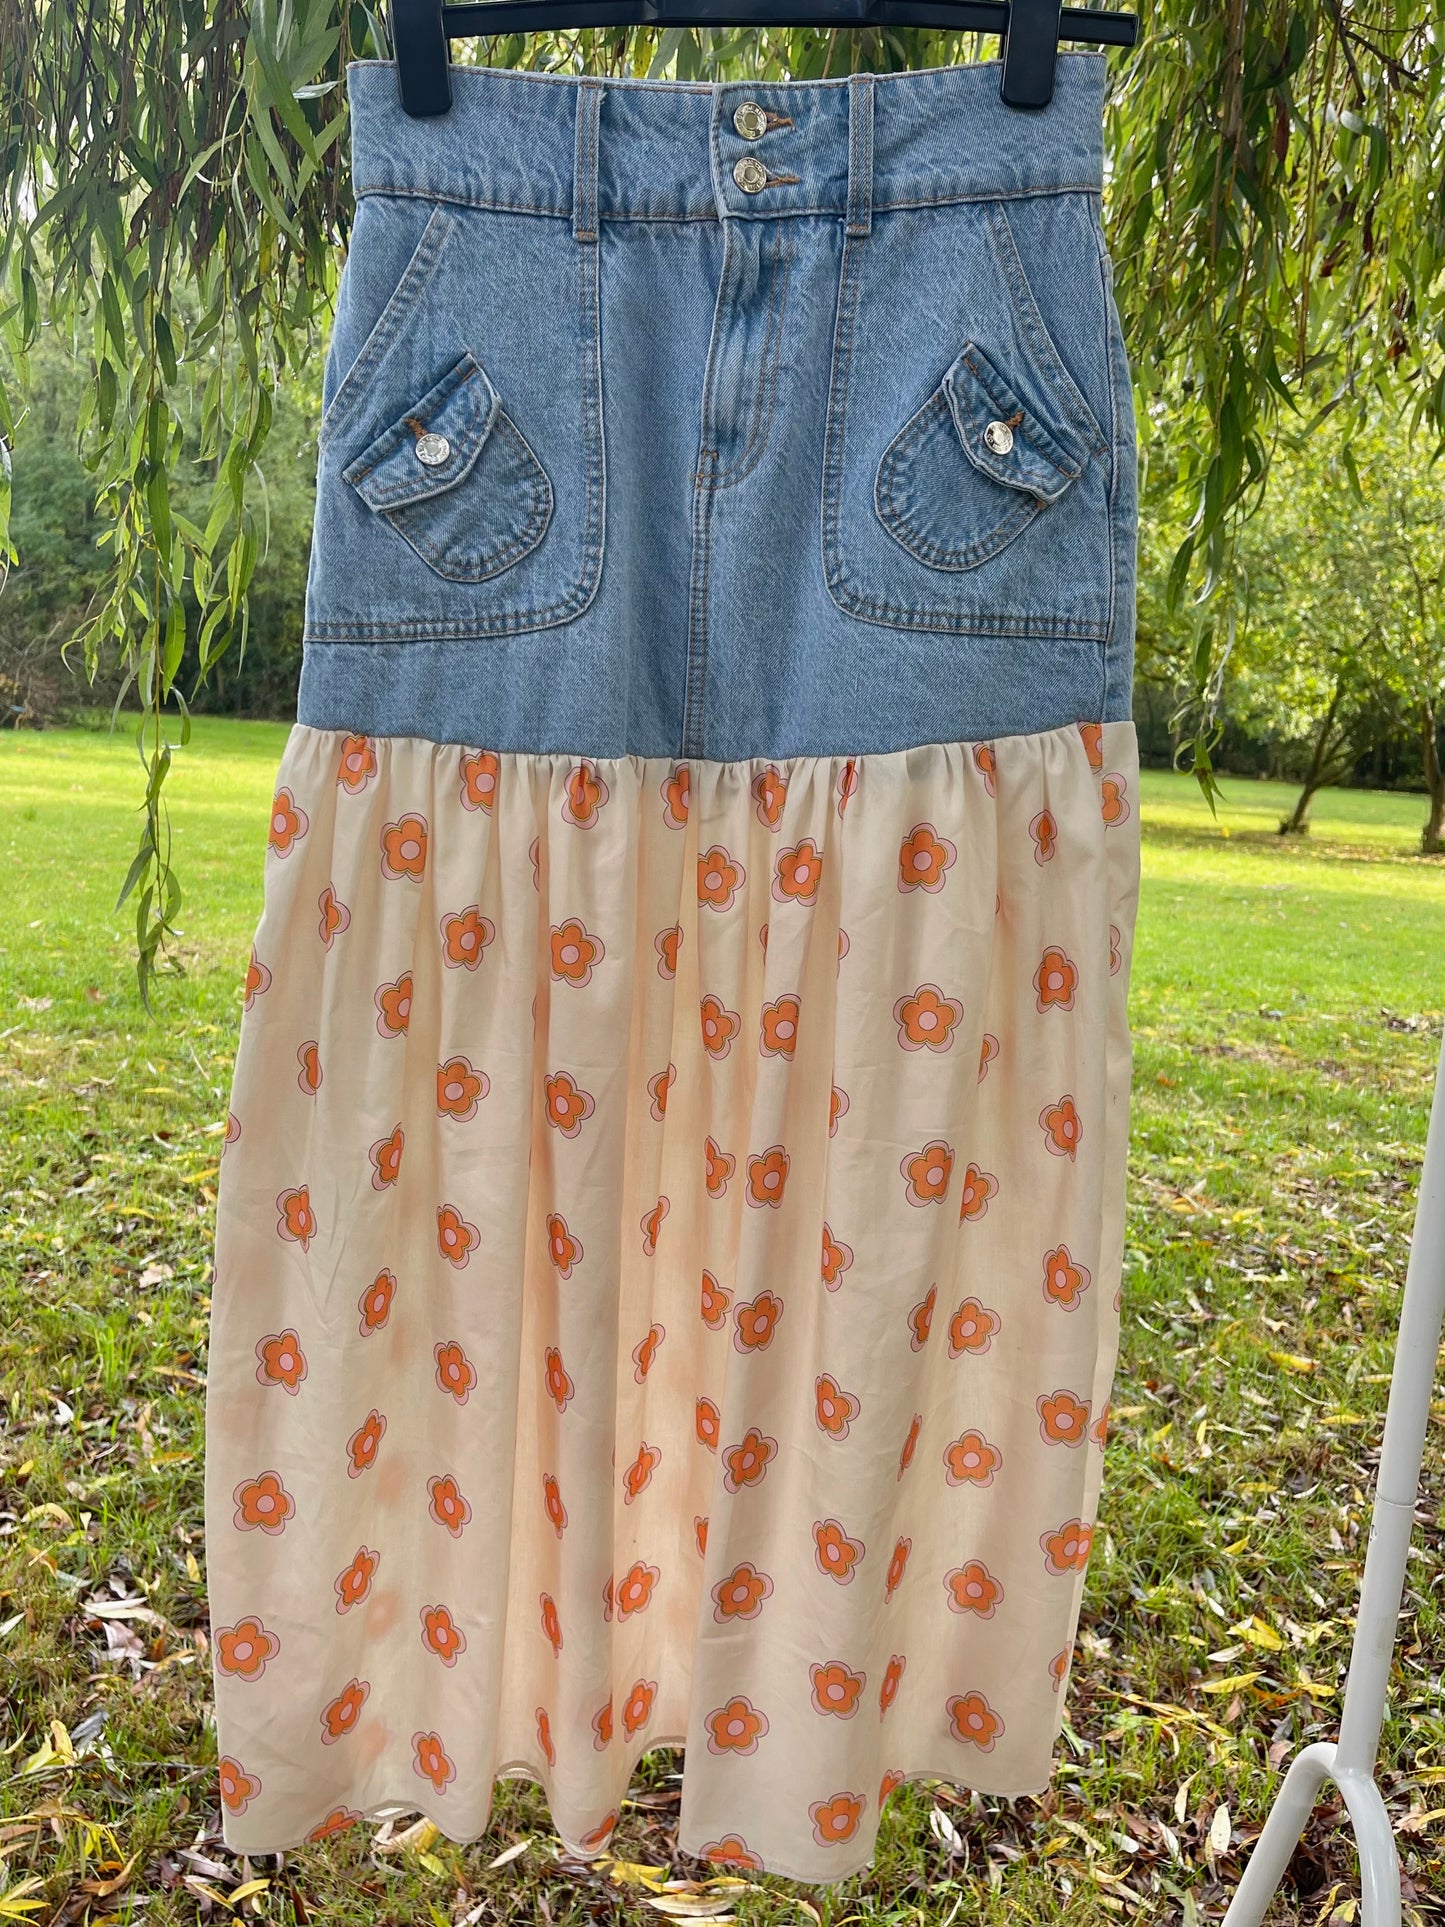 Upcycled Flower Power skirt